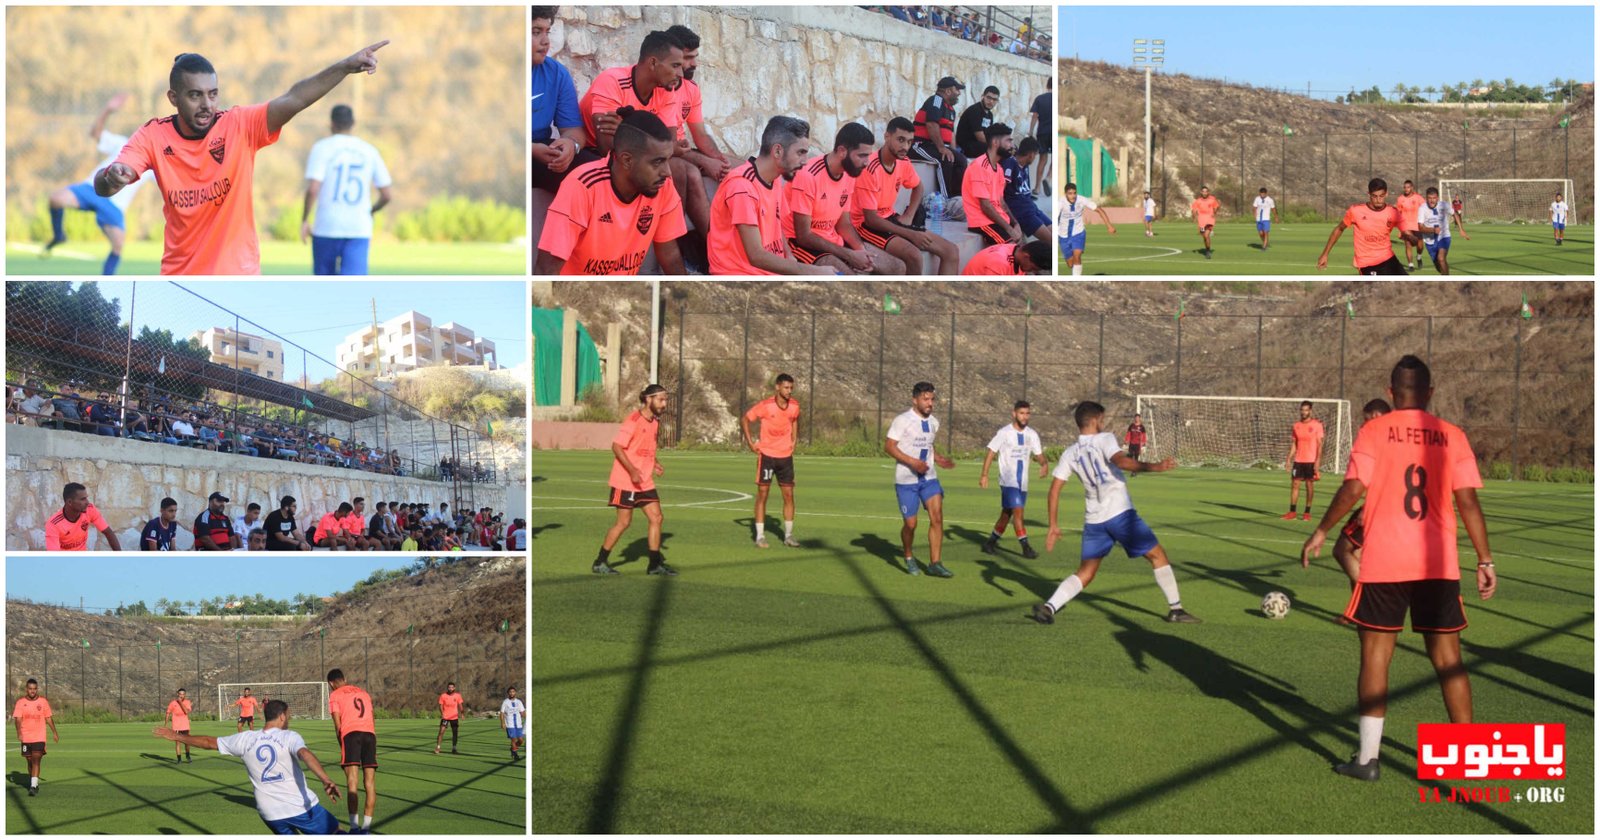 مباراة كرة قدم ضمن المهرجان الرياضي الذي يقيمه نادي السلام السكسكية في ملعب الإمام الصدر في البلدة